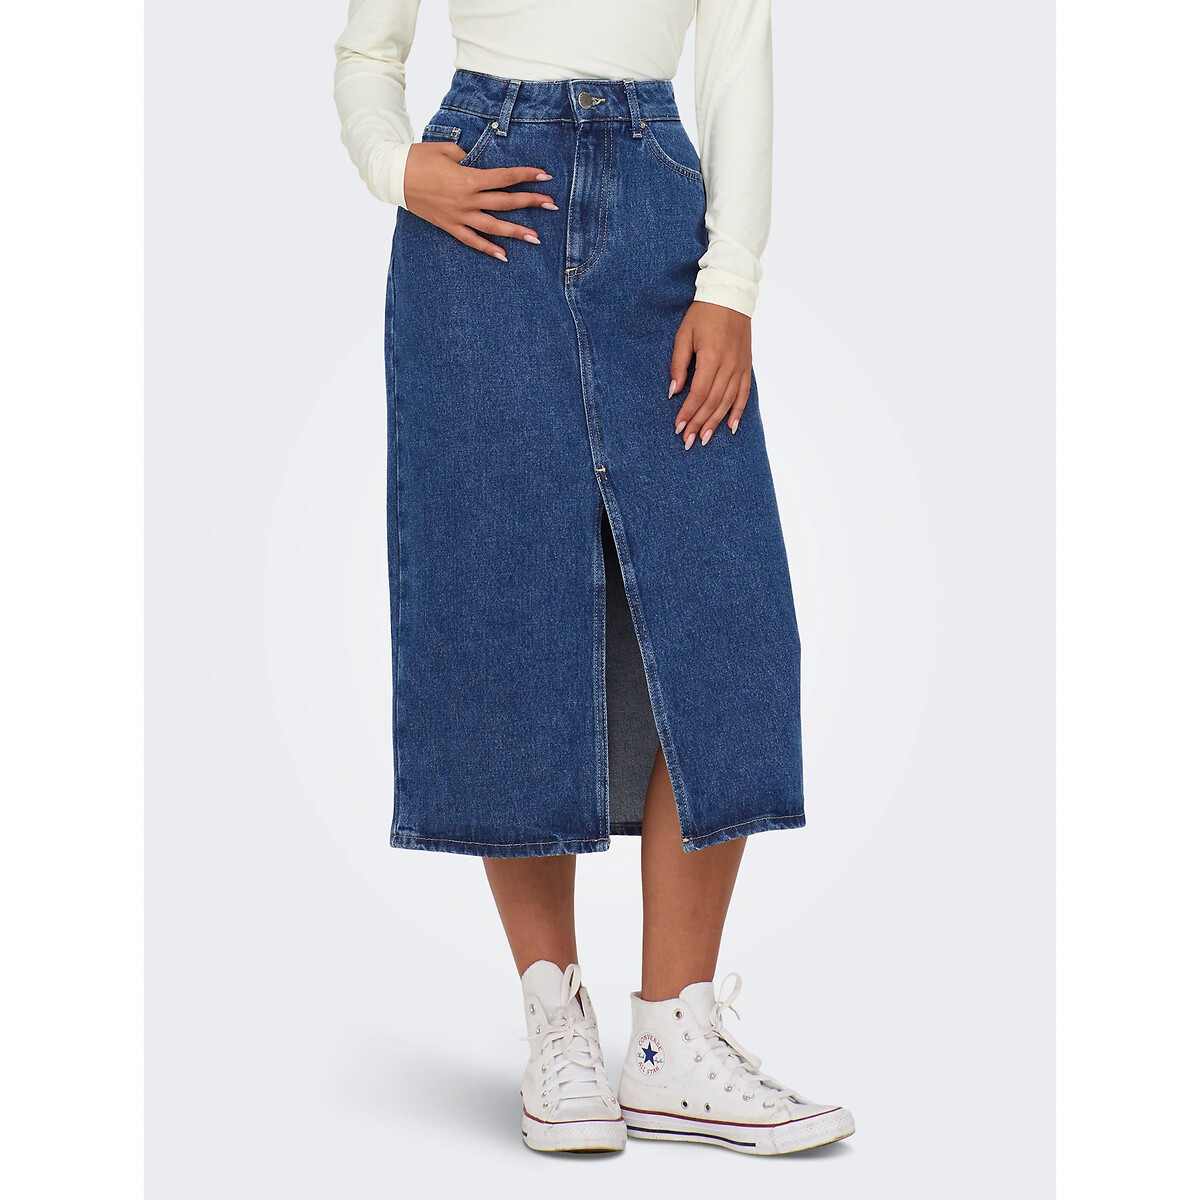 Юбка-миди из джинсовой ткани XL синий юбка длинная из джинсовой ткани m синий